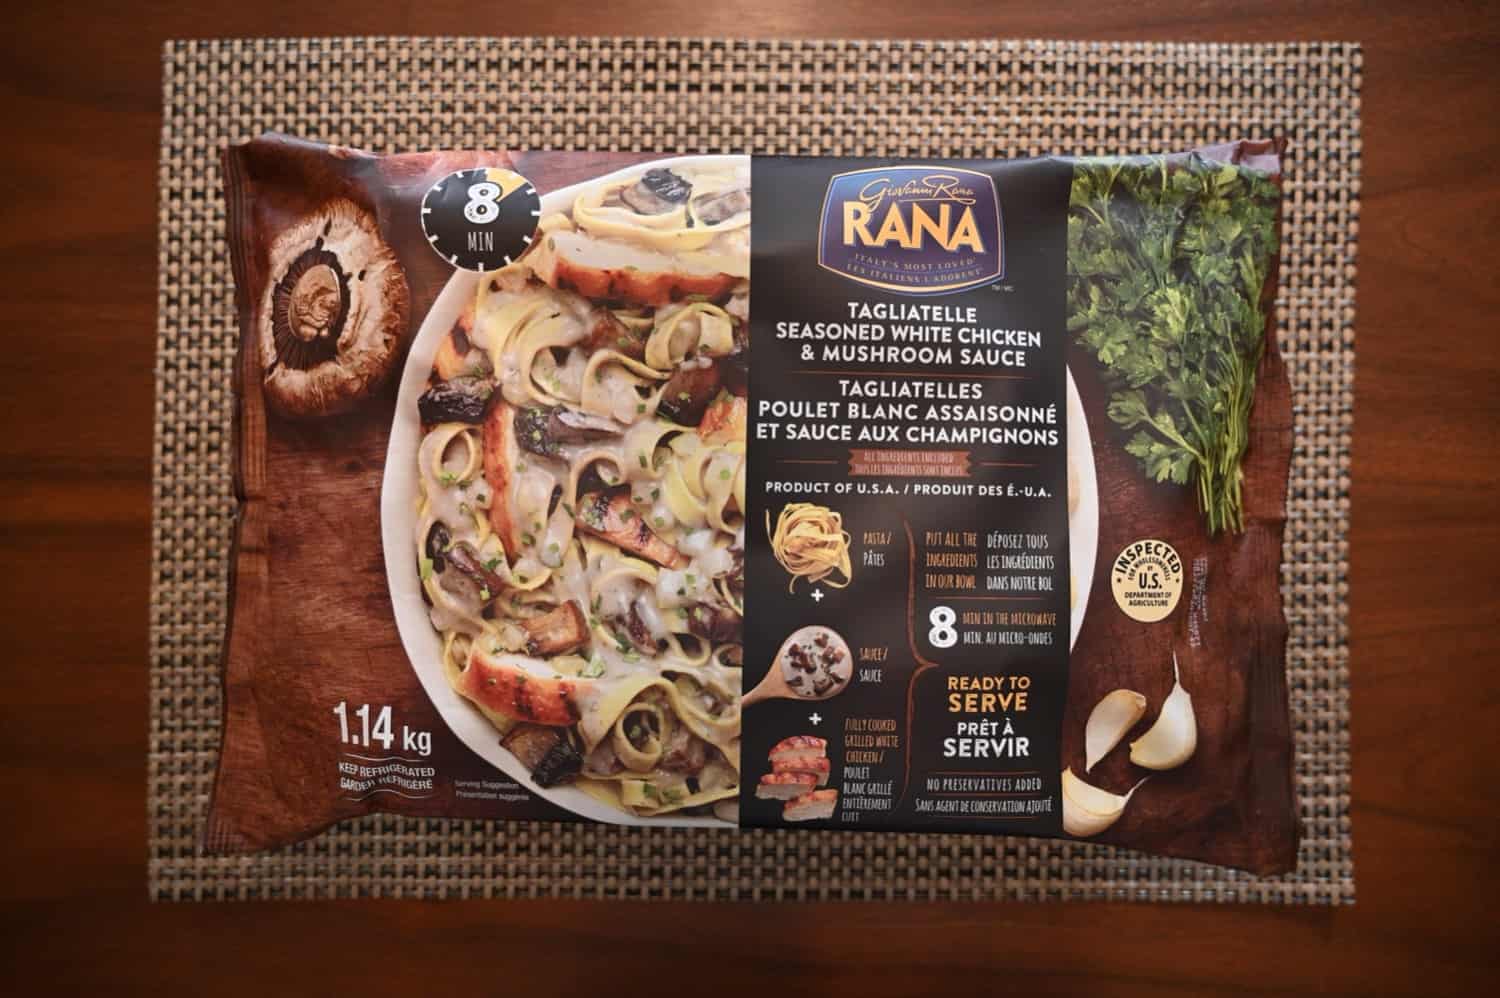 Costco Rana Tagliatelle, Seasoned White Chicken & Mushroom Sauce Review -  Costcuisine